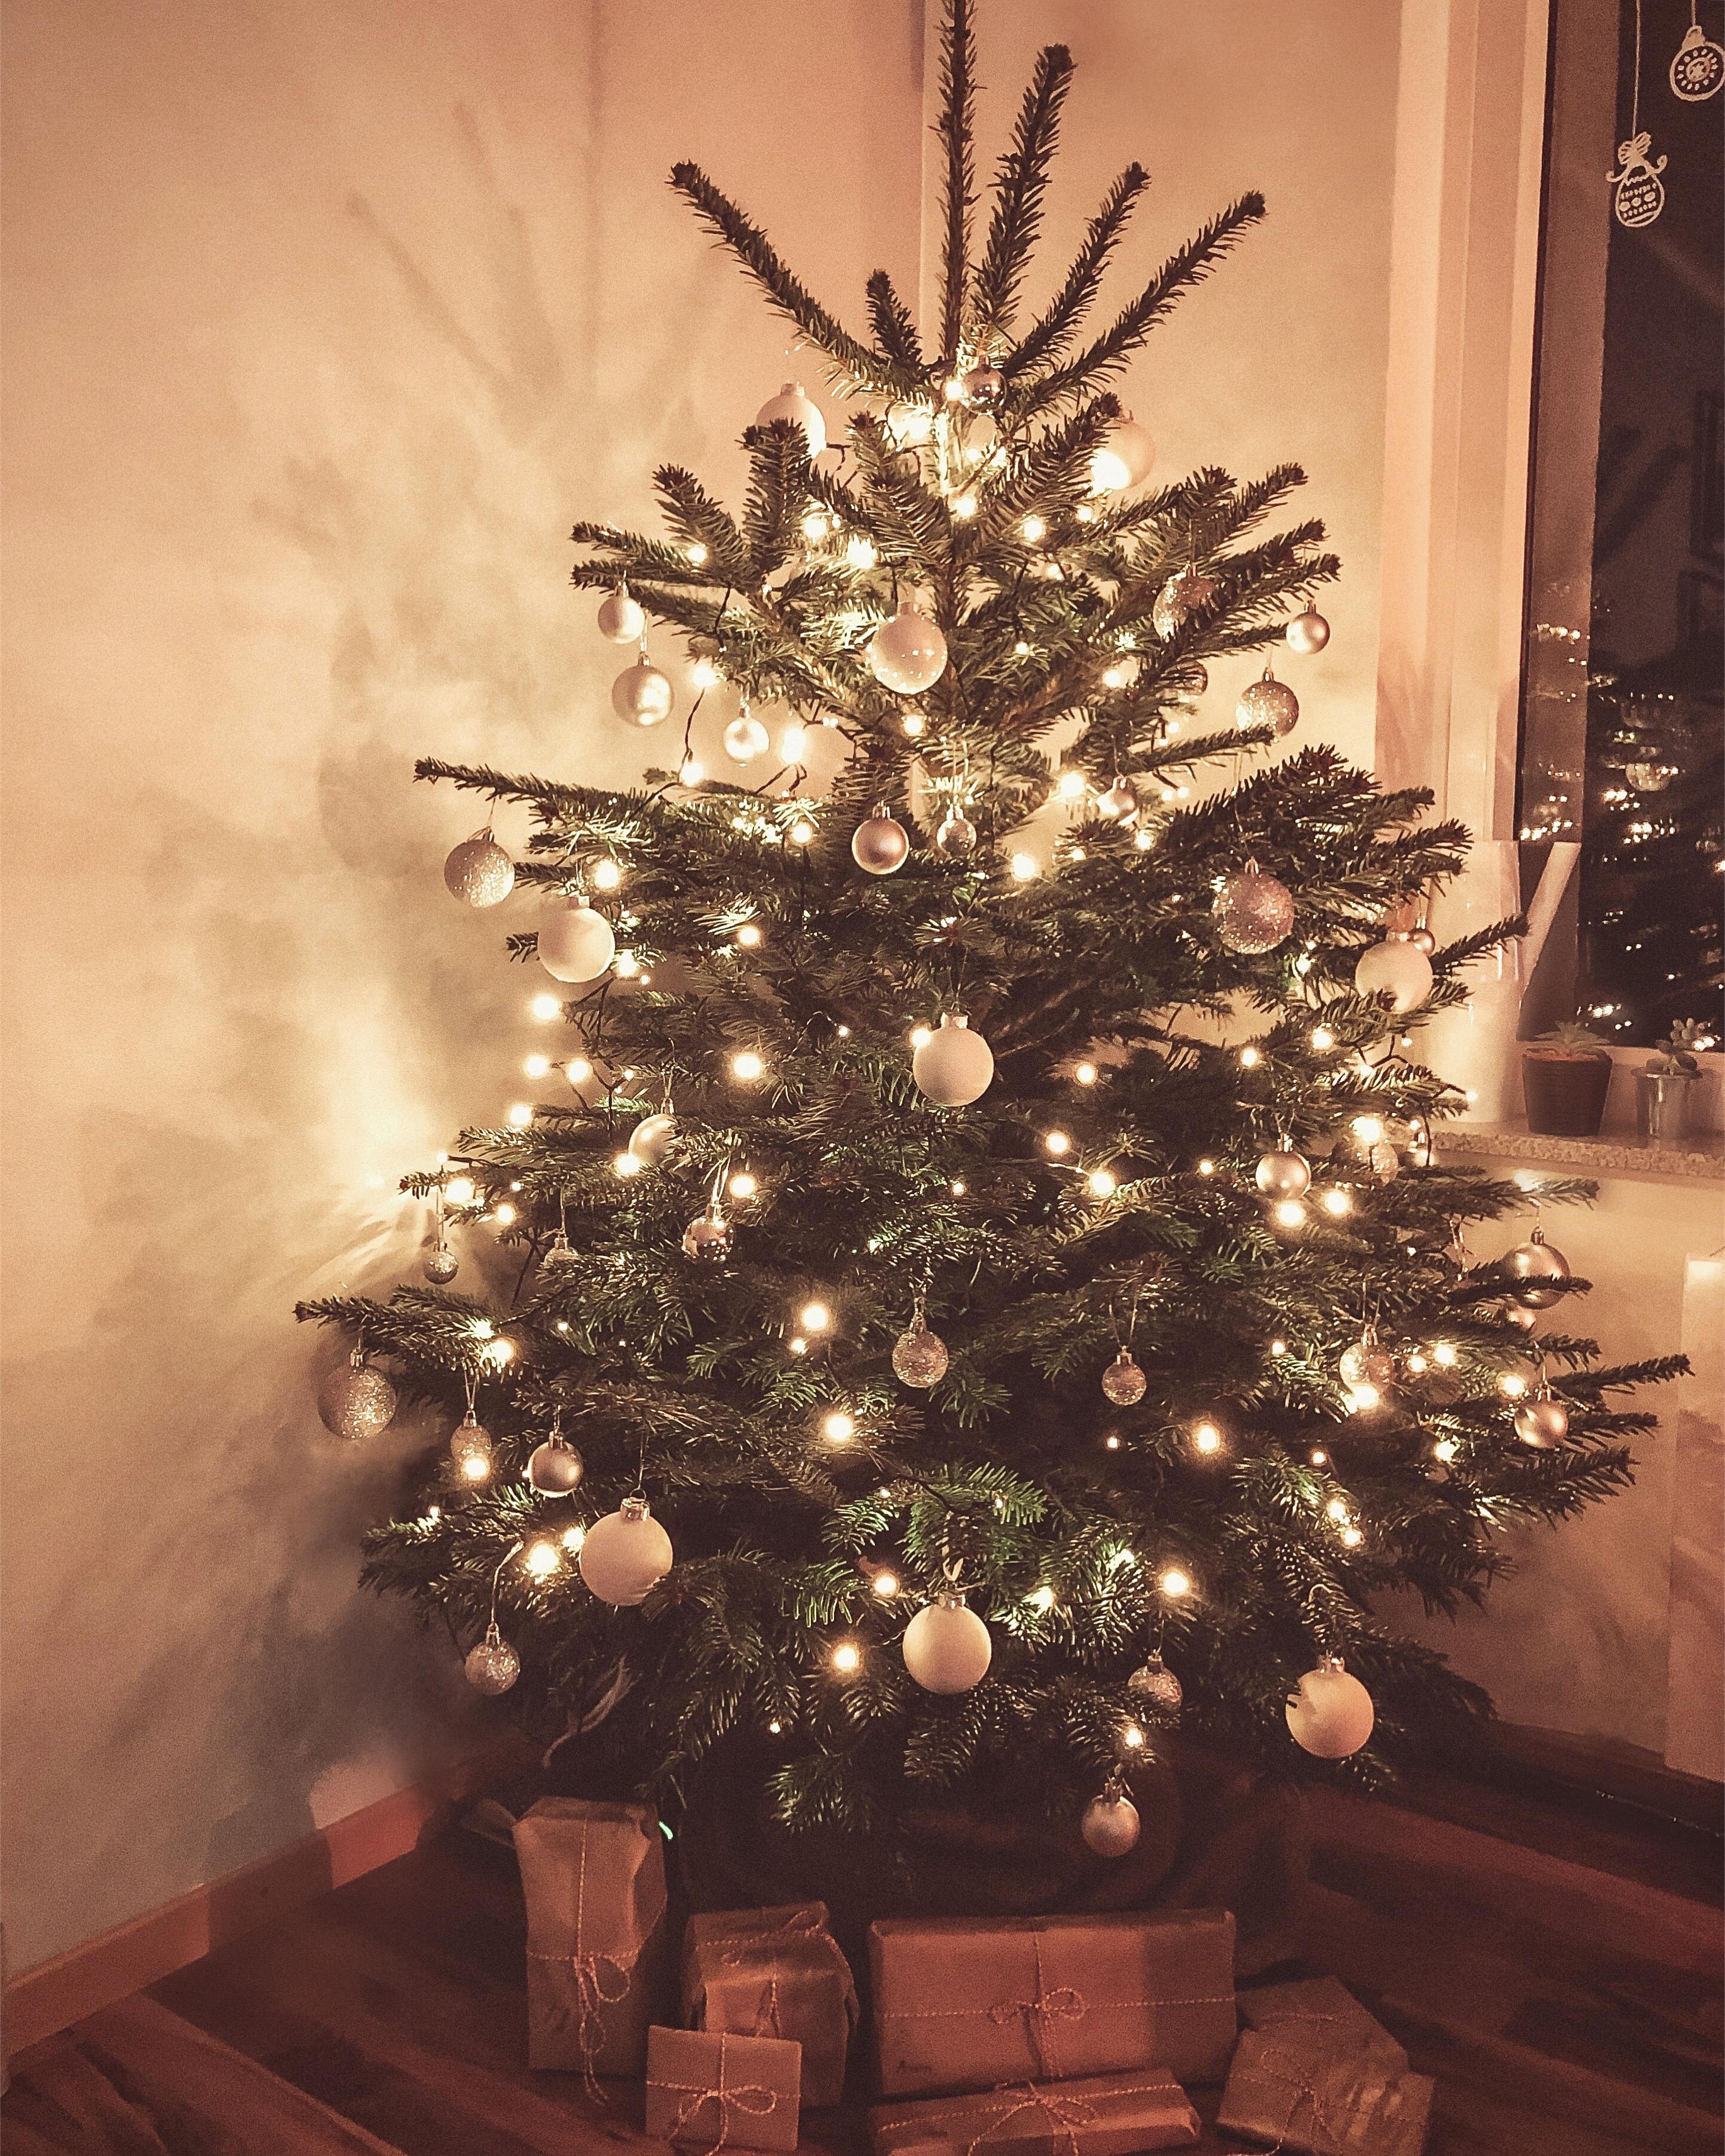 #weihnachtsbaum #rockingaroundthechristmastree #cozy #christmas #weihnachten